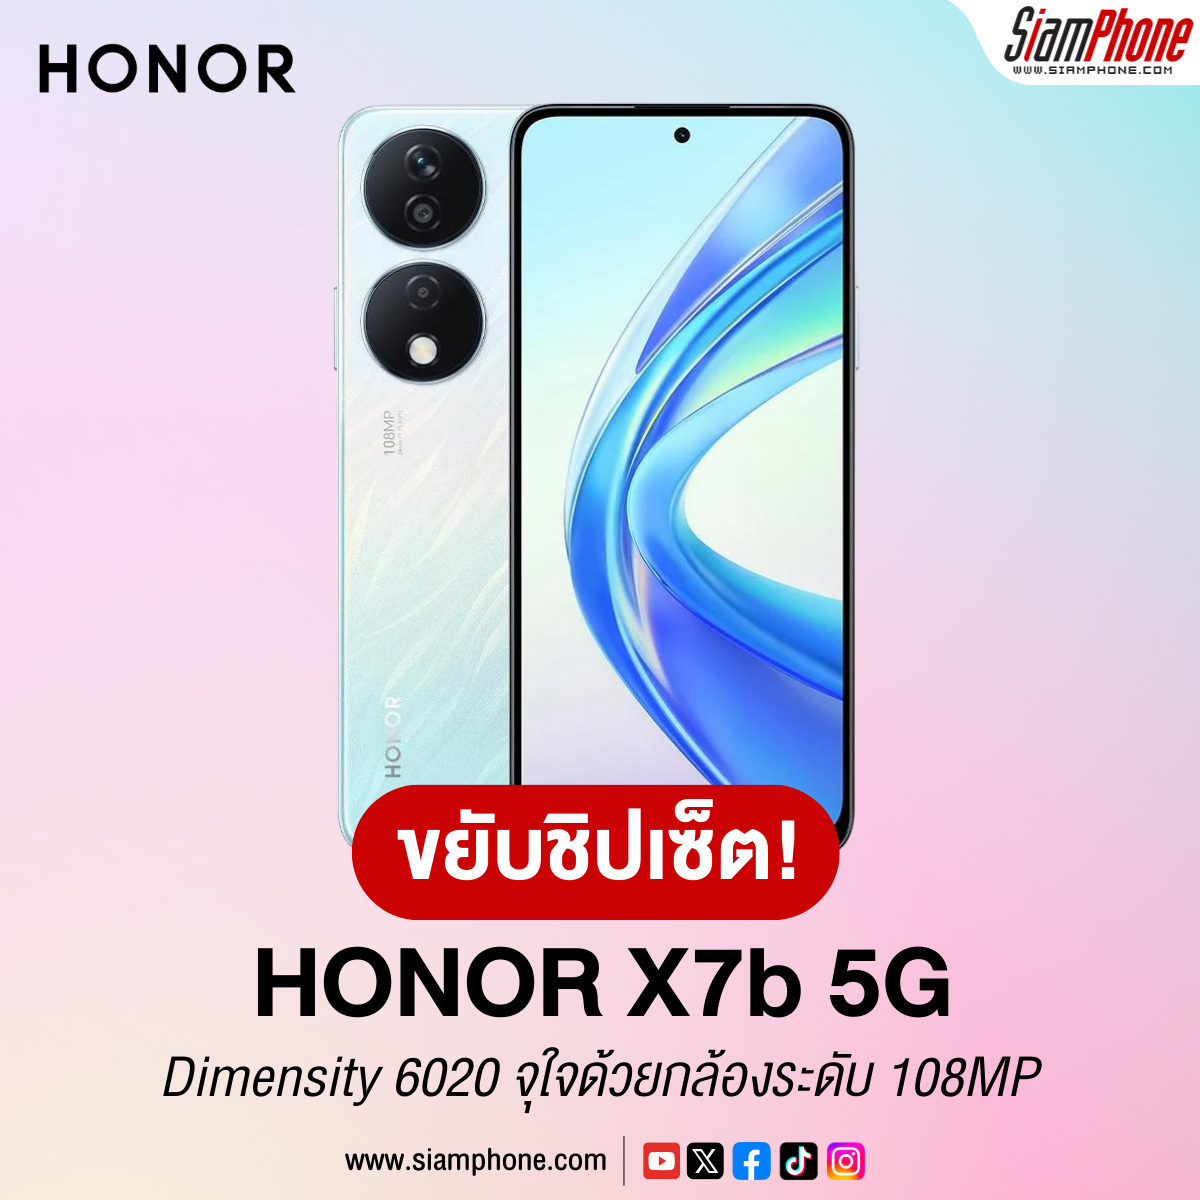 HONOR X7b 5G ขยับใช้ชิปเซ็ต Dimensity 6020 จุใจด้วยกล้องระดับ 108MP